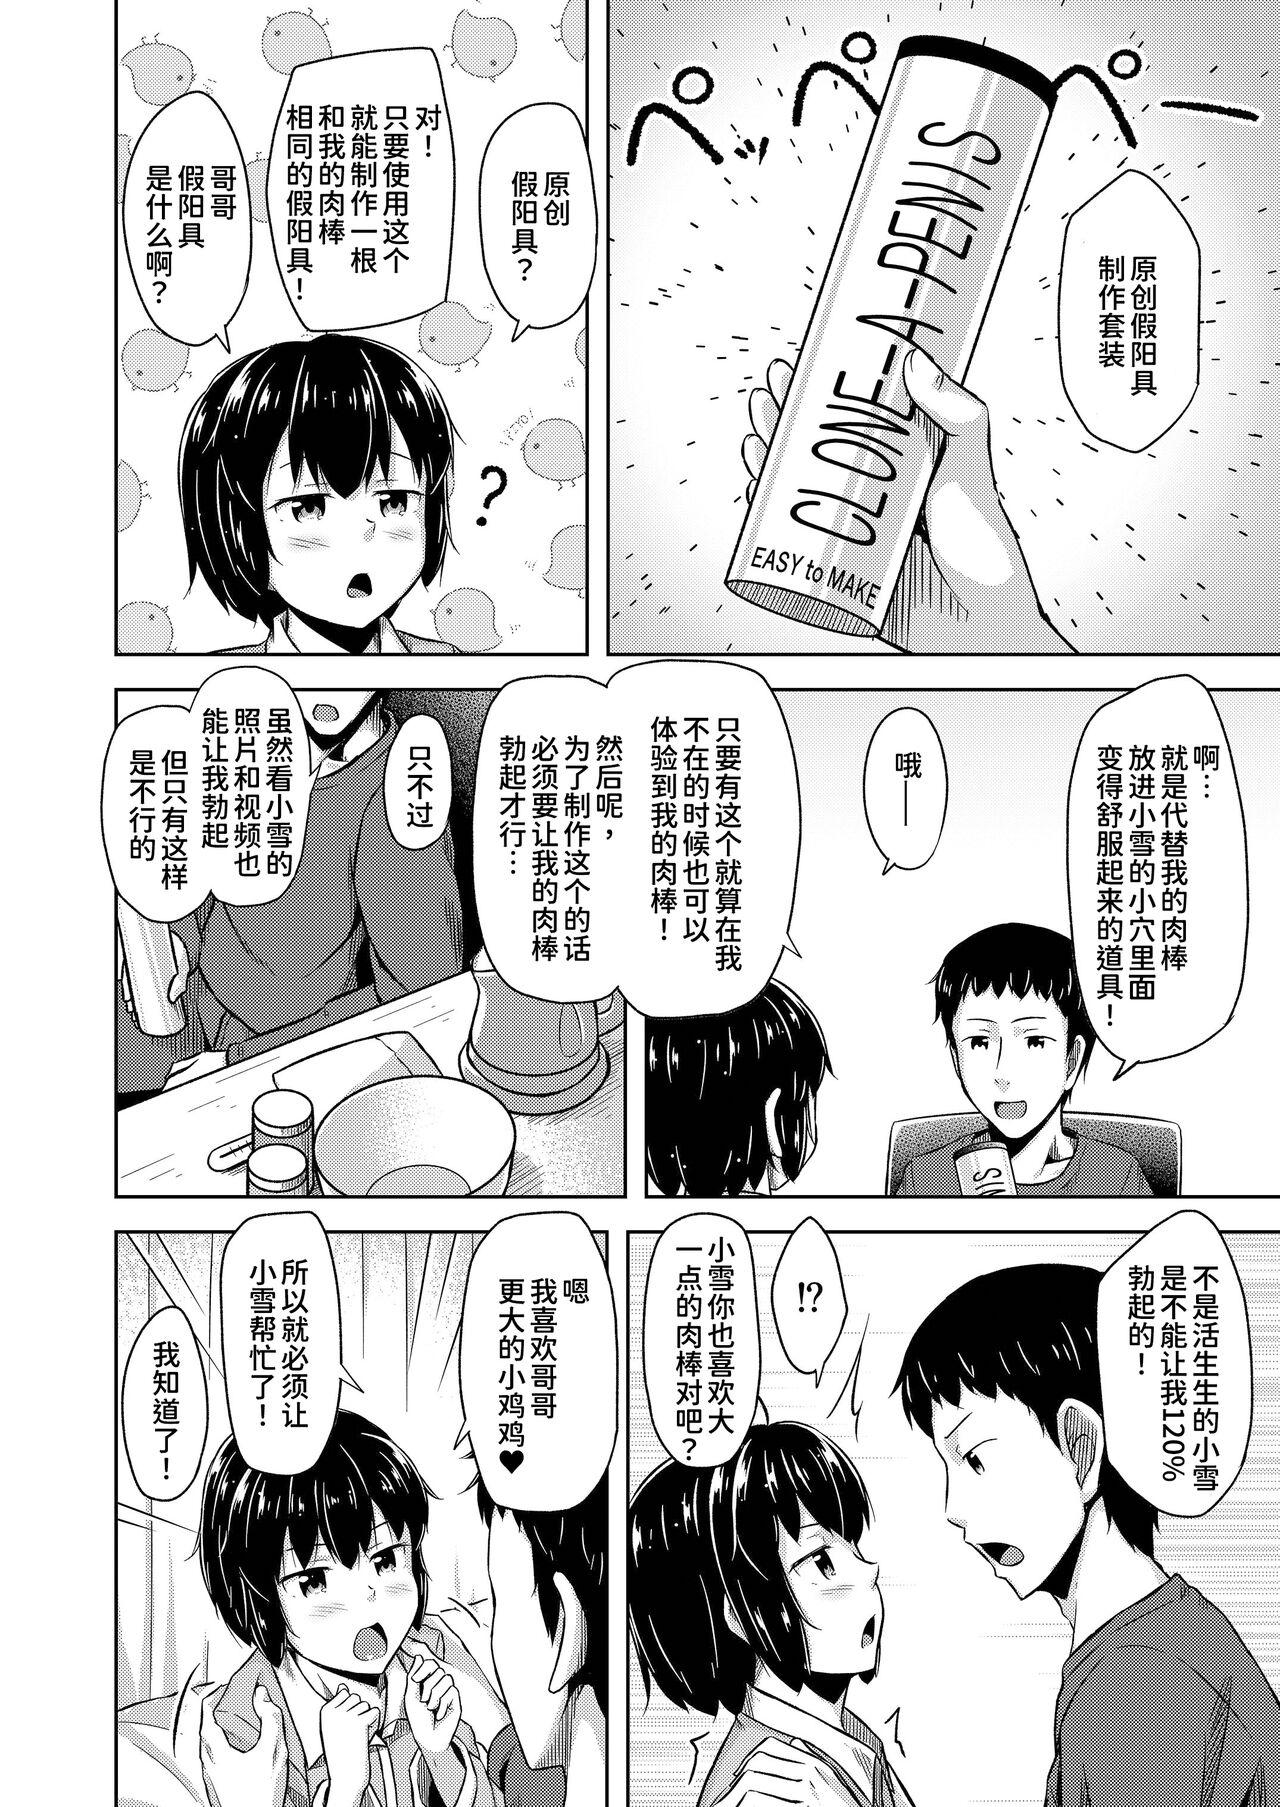 Cumming Imouto to Ore no Onanie Jijou 3 - Original Submission - Page 7